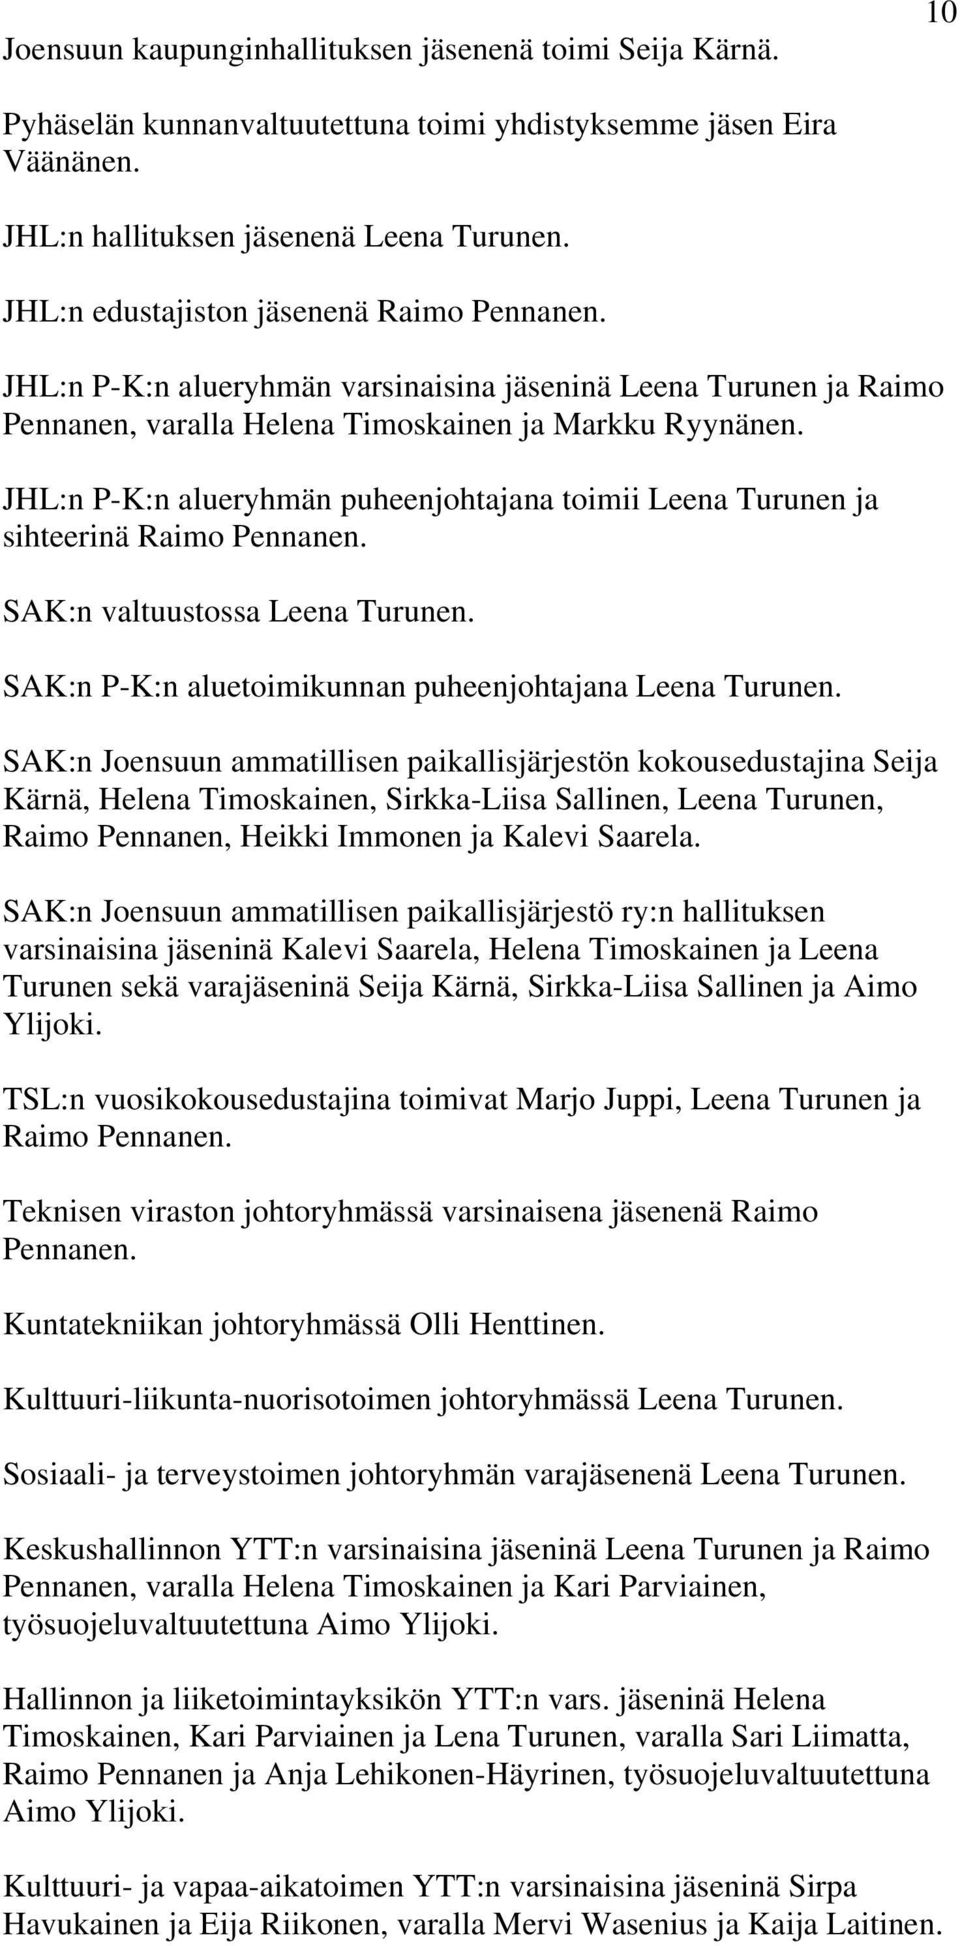 JHL:n P-K:n alueryhmän puheenjohtajana toimii Leena Turunen ja sihteerinä Raimo Pennanen. SAK:n valtuustossa Leena Turunen. SAK:n P-K:n aluetoimikunnan puheenjohtajana Leena Turunen.